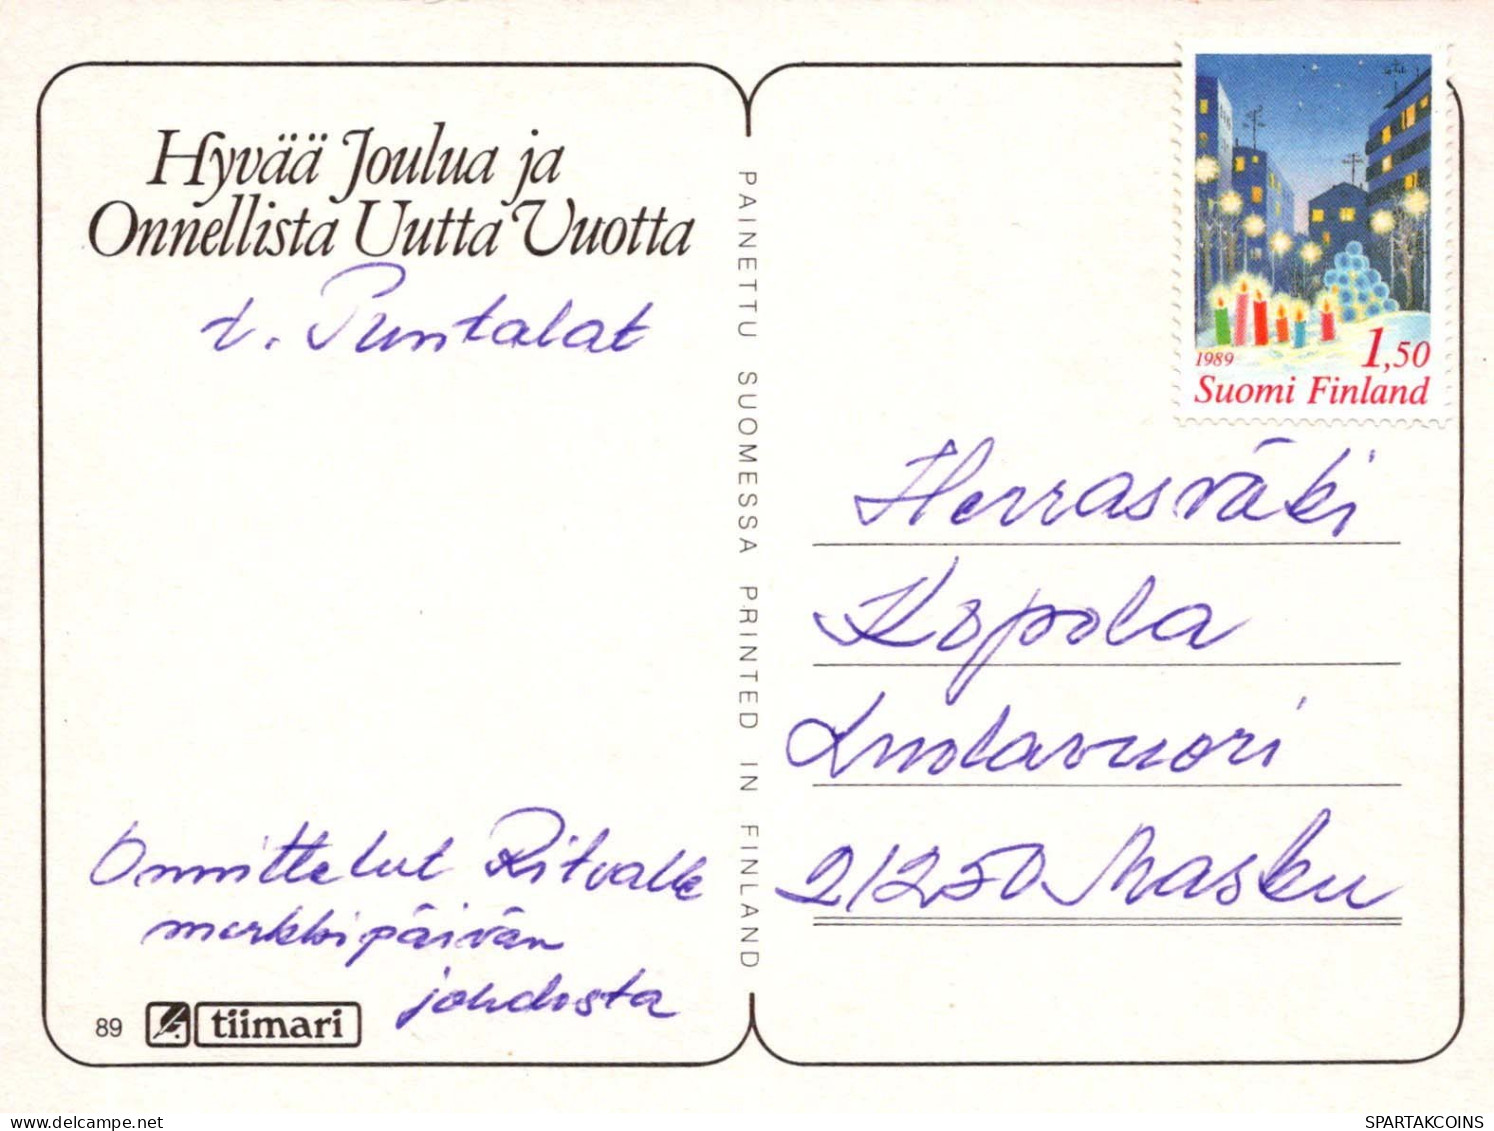 KINDER KINDER Szene S Landschafts Vintage Ansichtskarte Postkarte CPSM #PBU154.DE - Scenes & Landscapes